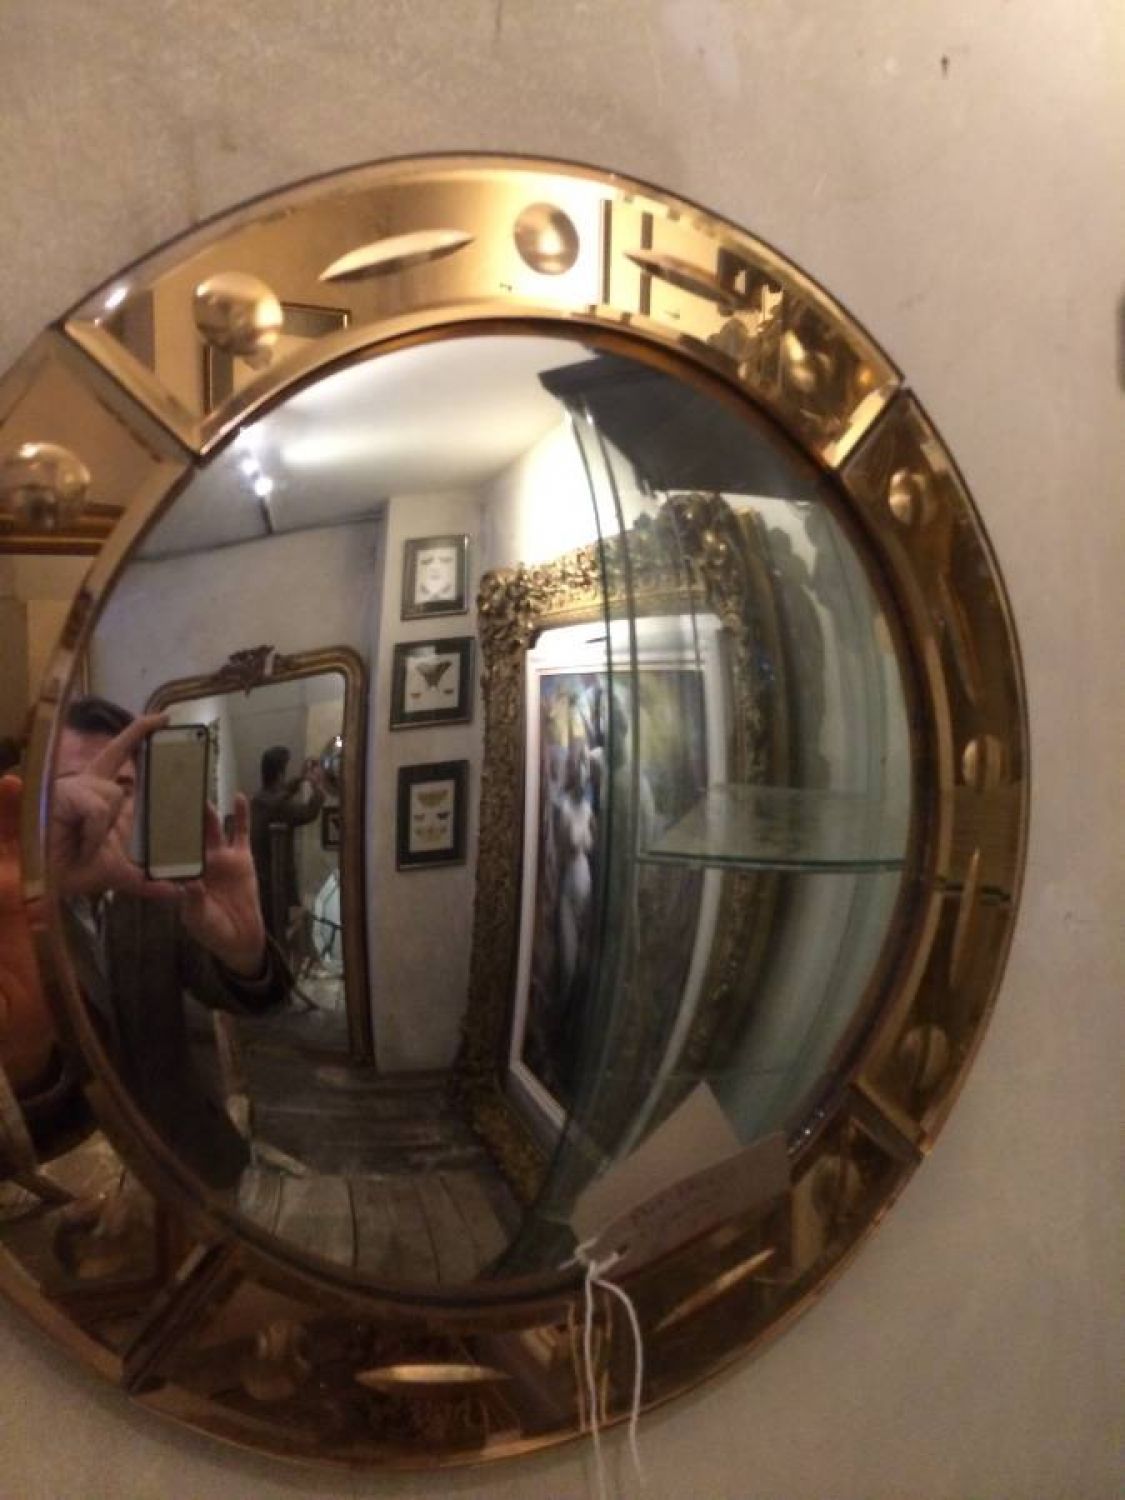 Art Deco Convex Mirror In Decorative With Regard To Convex Decorative Mirror (View 5 of 15)